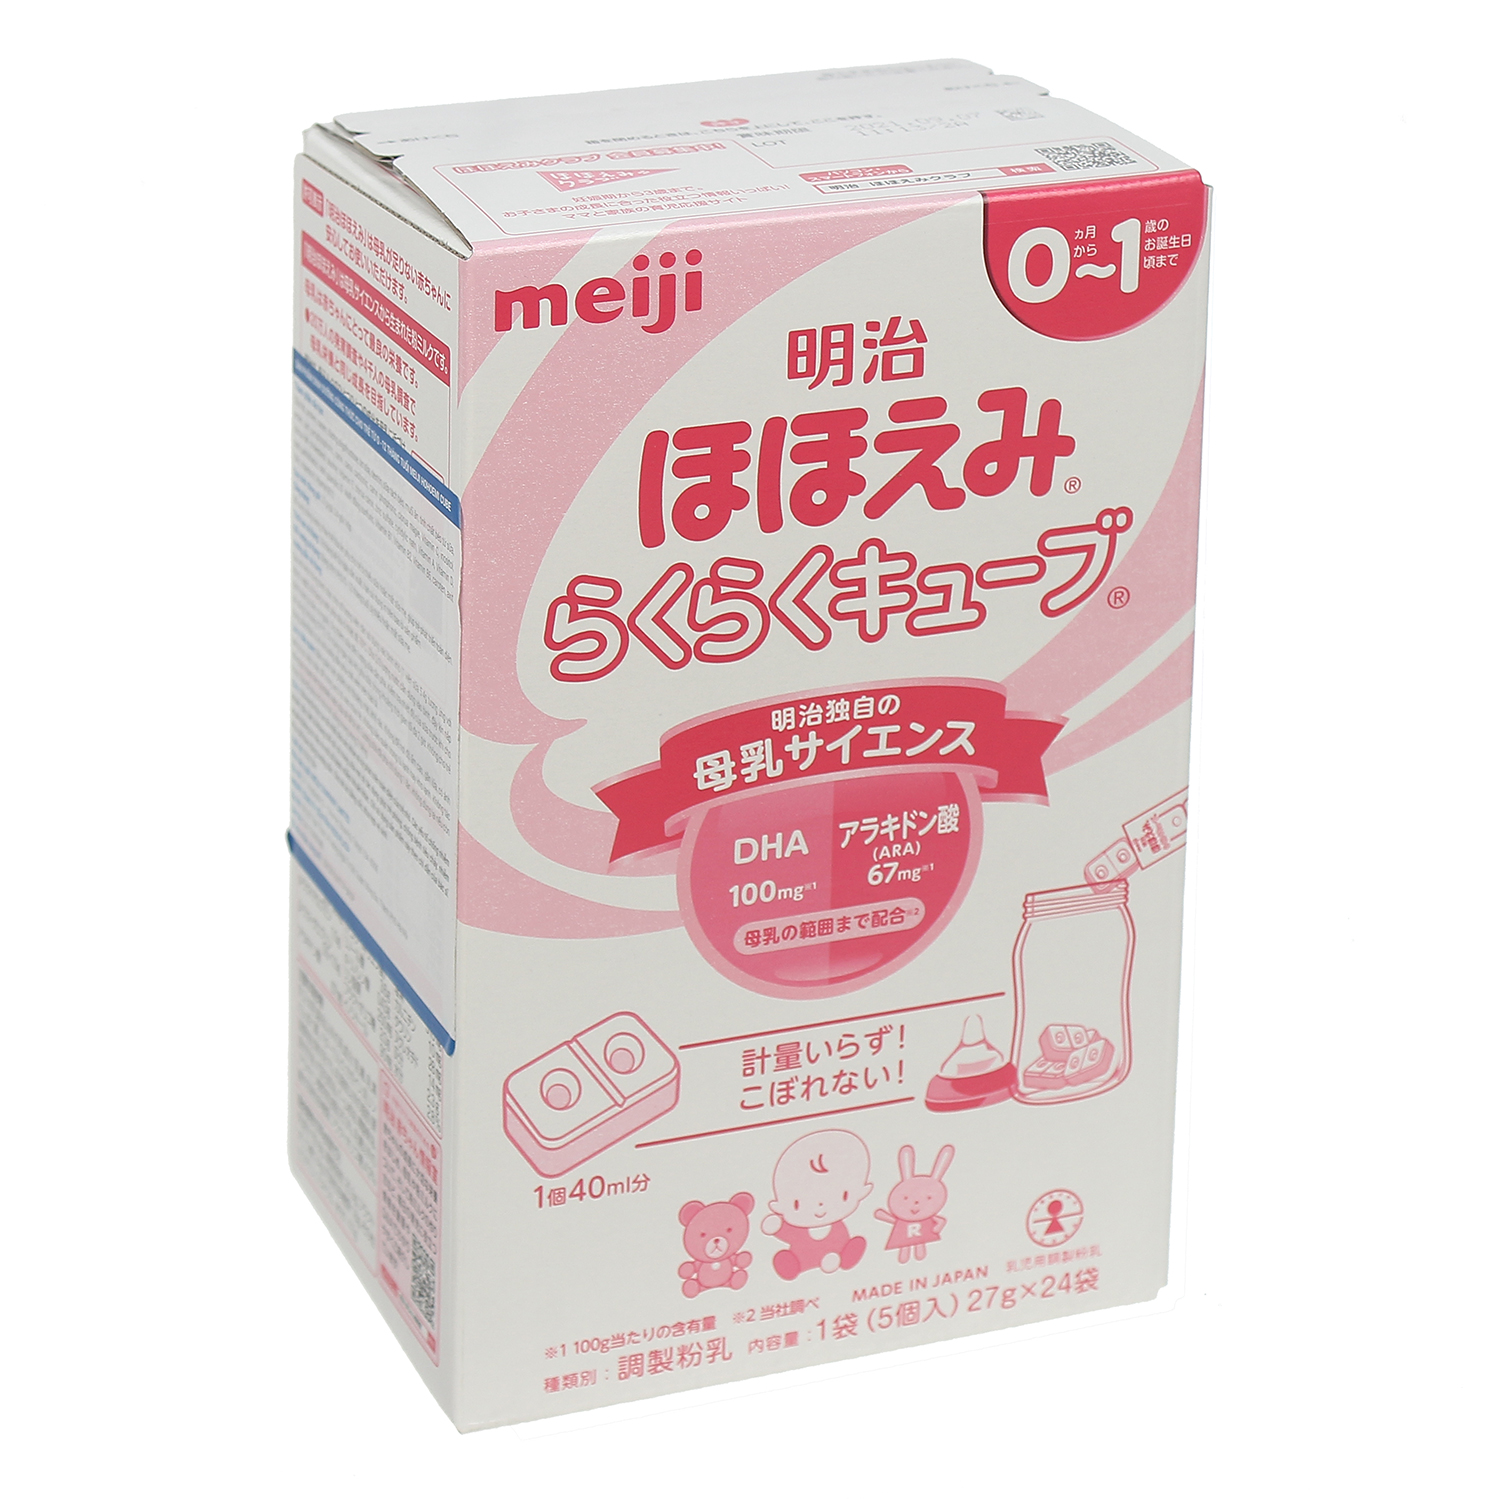 Điểm danh 6 sữa Nhật cho bé và ưu nhược điểm mỗi loại  Bapkidcom